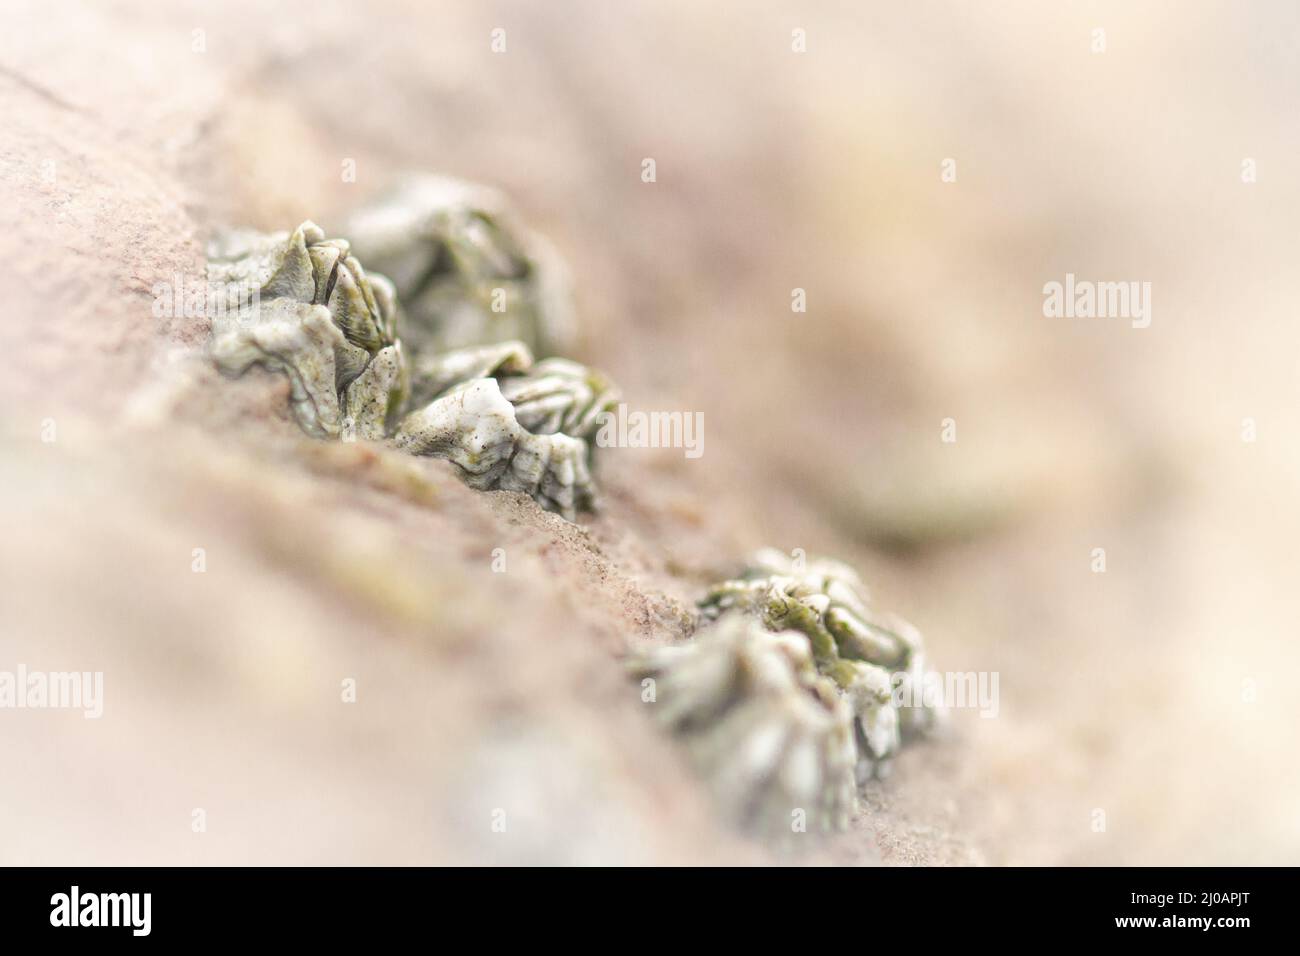 Les barnacles (Balanus balanus) croissant sur les rochers de West Beach, Watchet ressemble à un paysage extraterrestre lorsqu'il est dans une macro photographie Banque D'Images